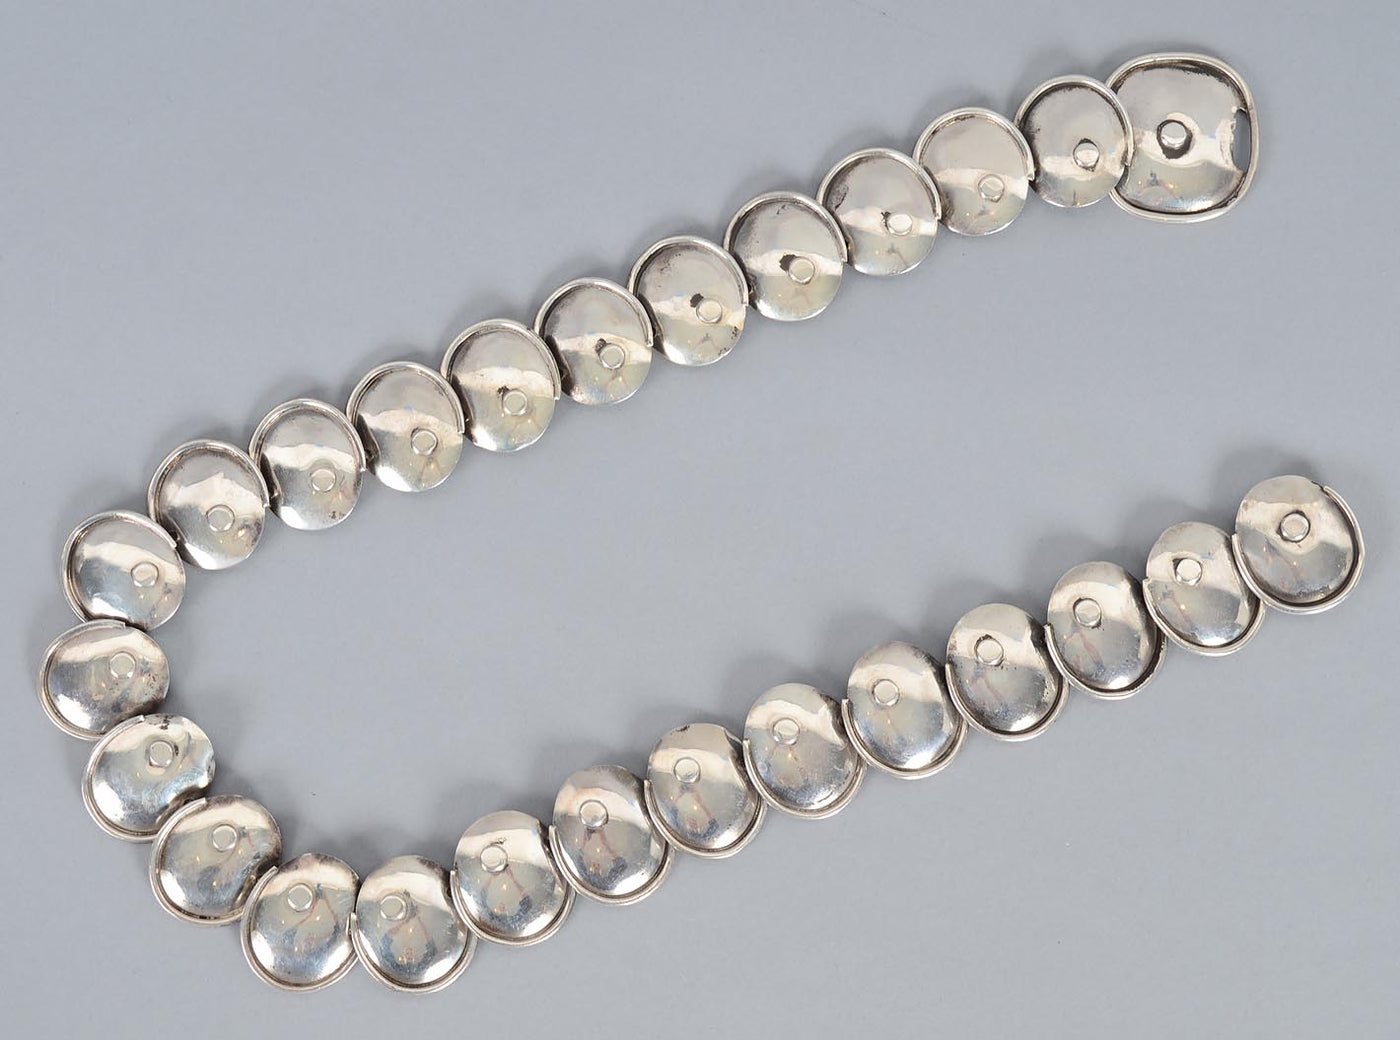 hector-aguilar-silver-armadillo-necklace-1447448-2